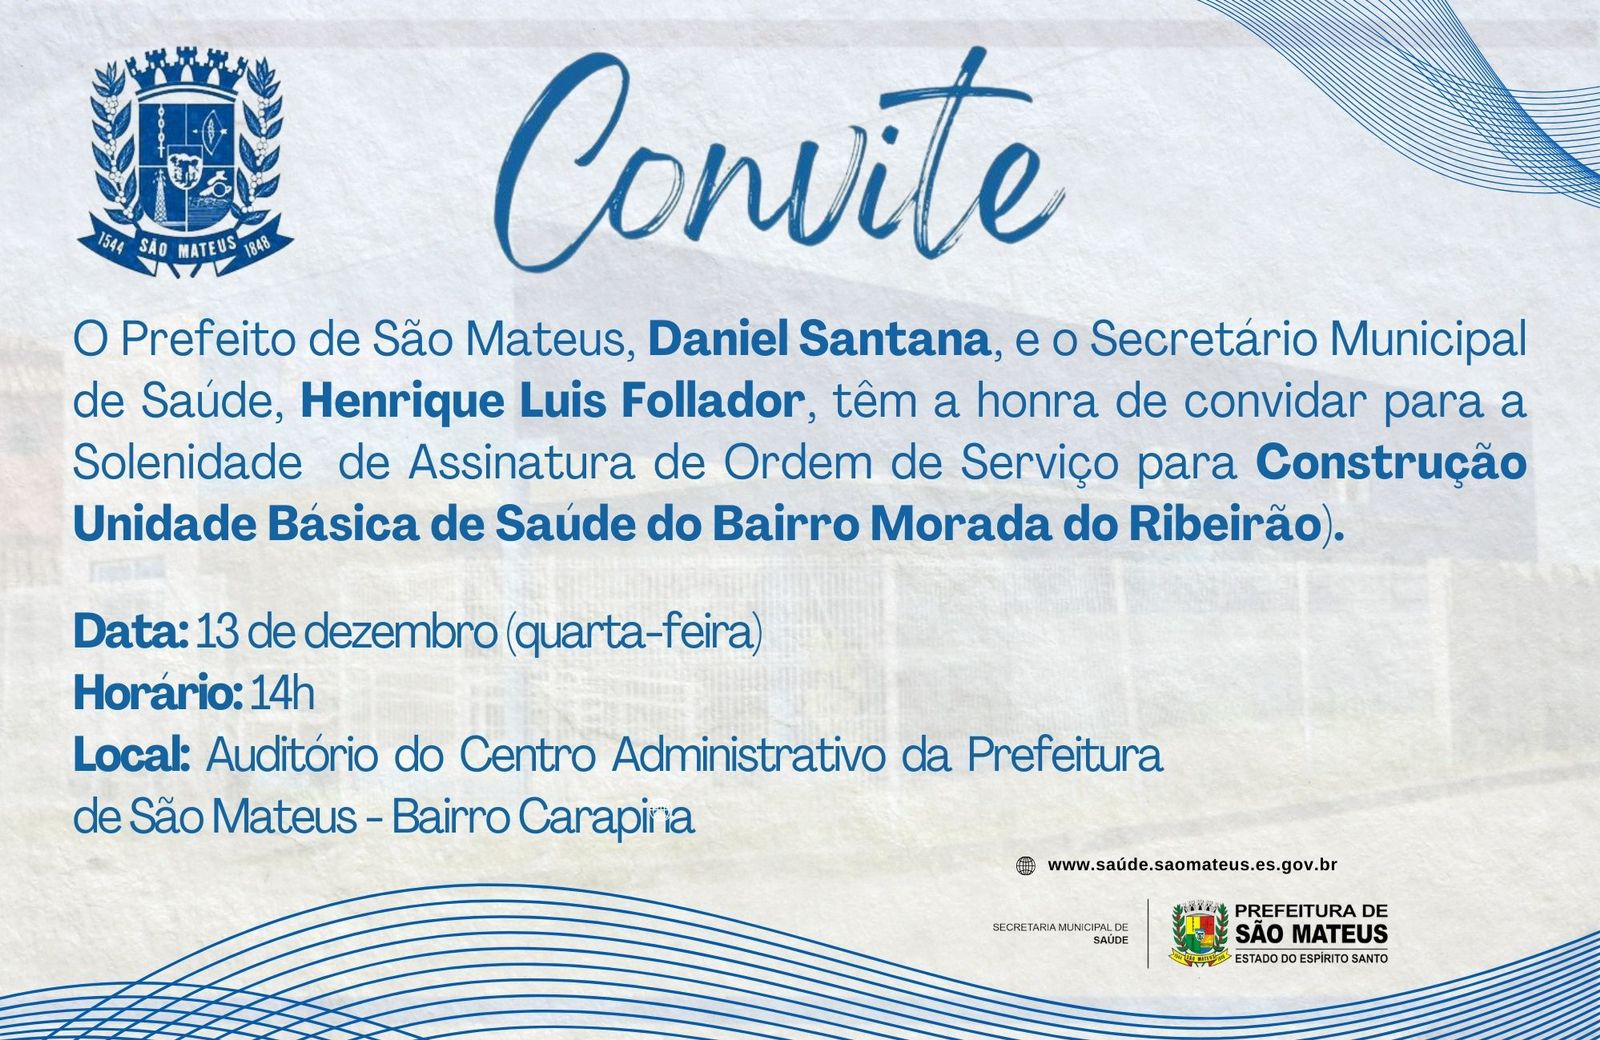 CONVITE - Solenidade de Assinatura de Ordem de Serviço para Construção da Unidade Básica de Saúde do Bairro Morada do Ribeirão